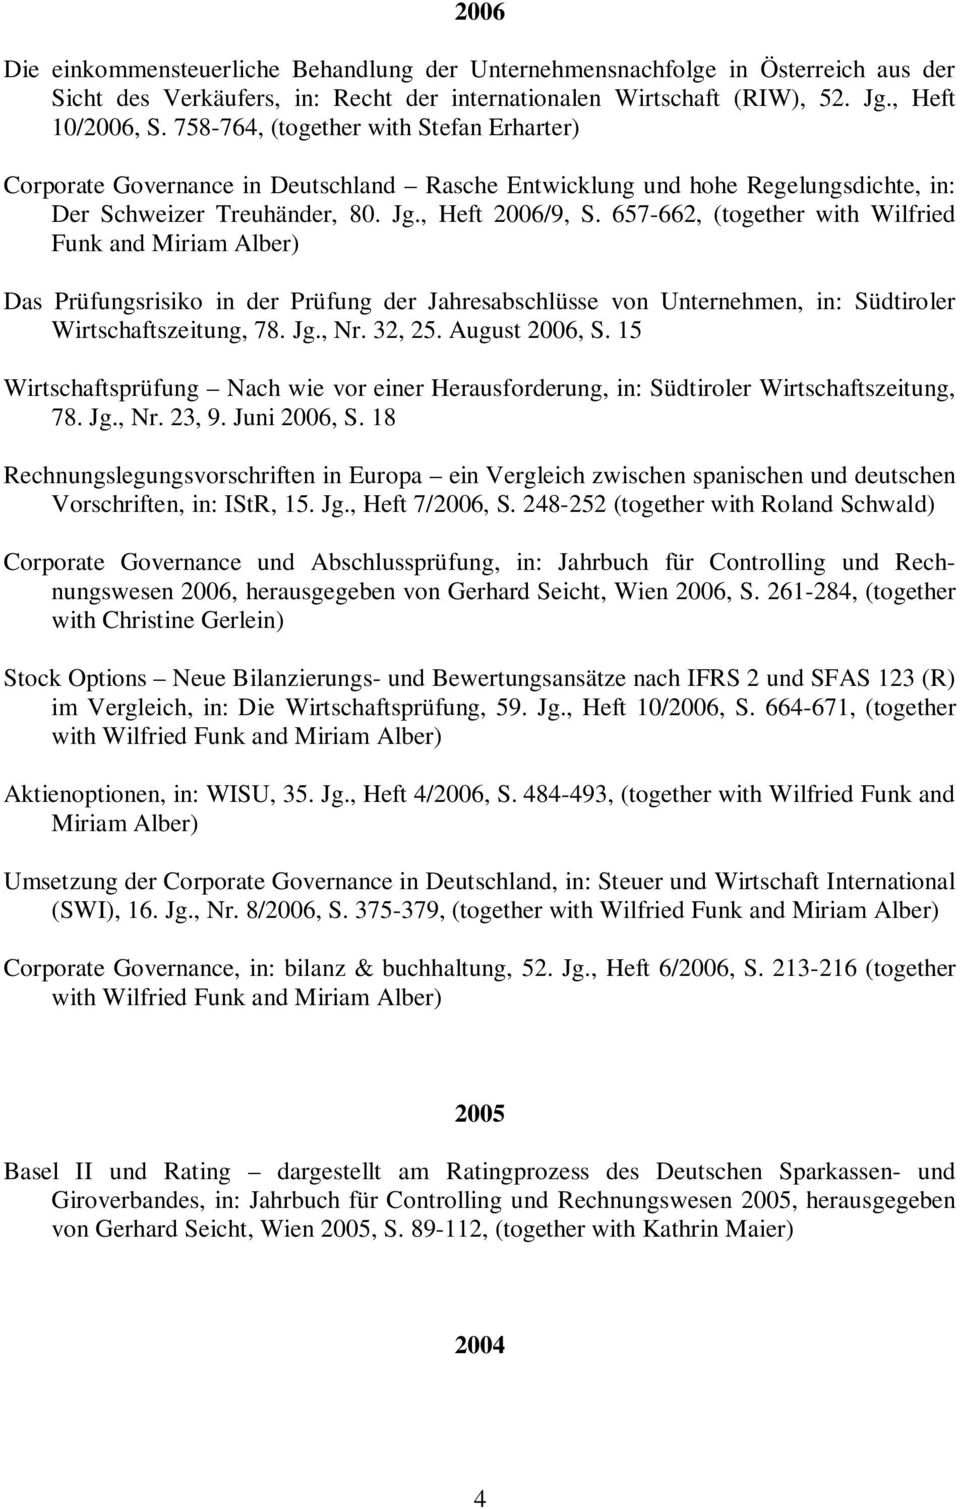 657-662, (together with Wilfried Funk and Miriam Alber) Das Prüfungsrisiko in der Prüfung der Jahresabschlüsse von Unternehmen, in: Südtiroler Wirtschaftszeitung, 78. Jg., Nr. 32, 25. August 2006, S.